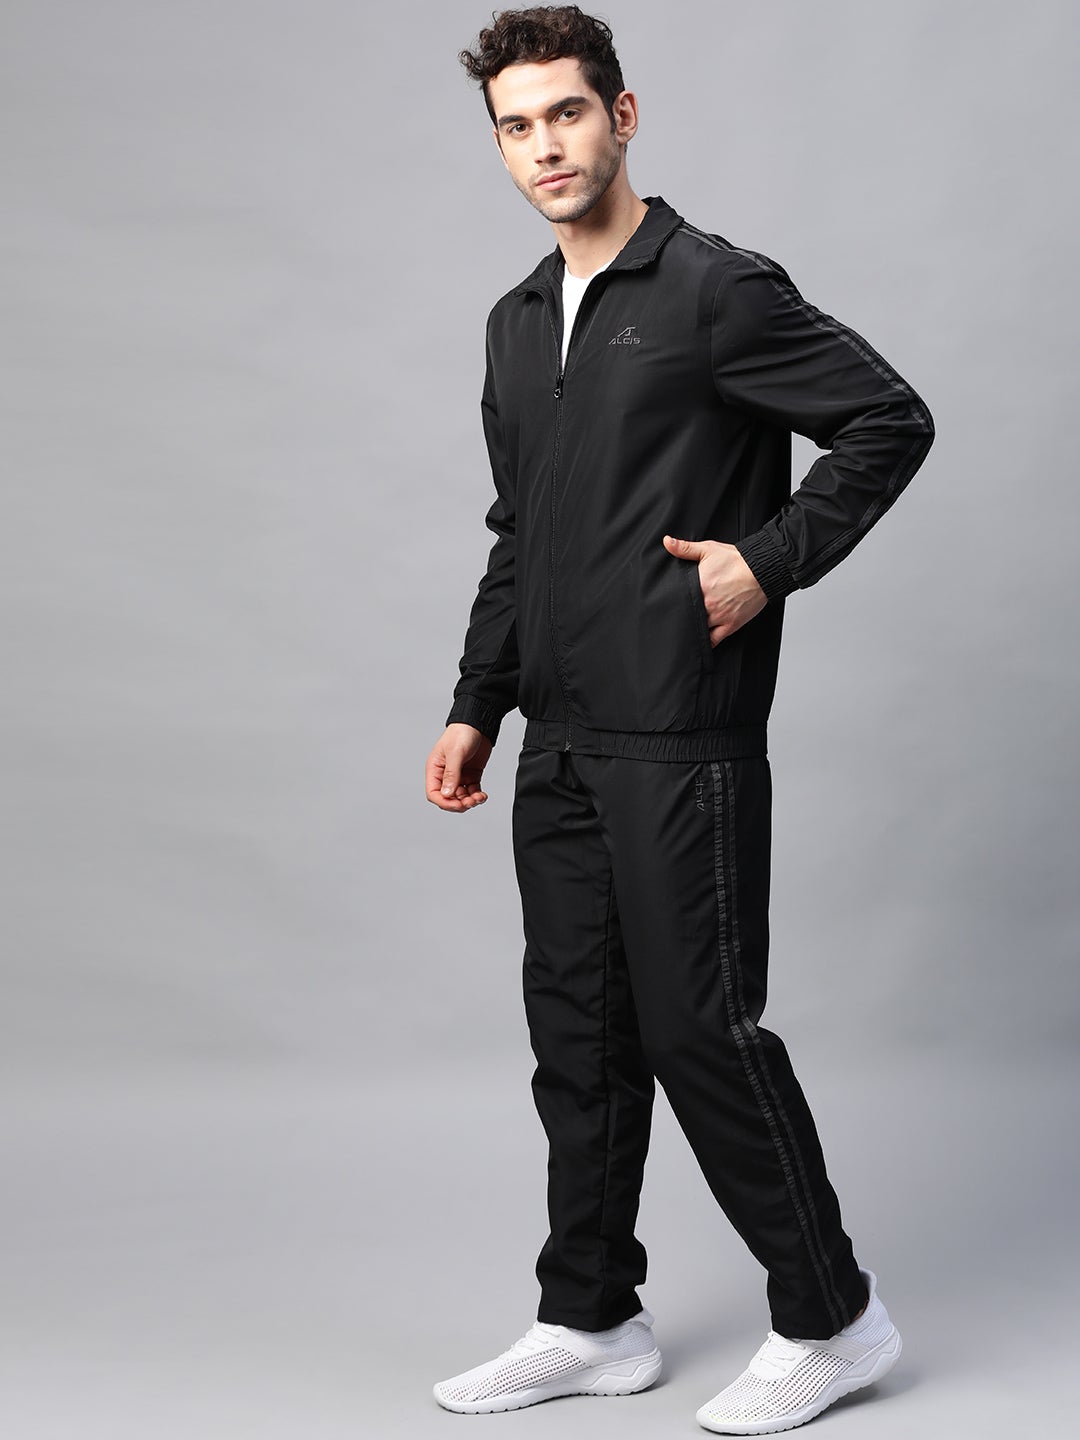 Alcis Men Solid Black Track Suit